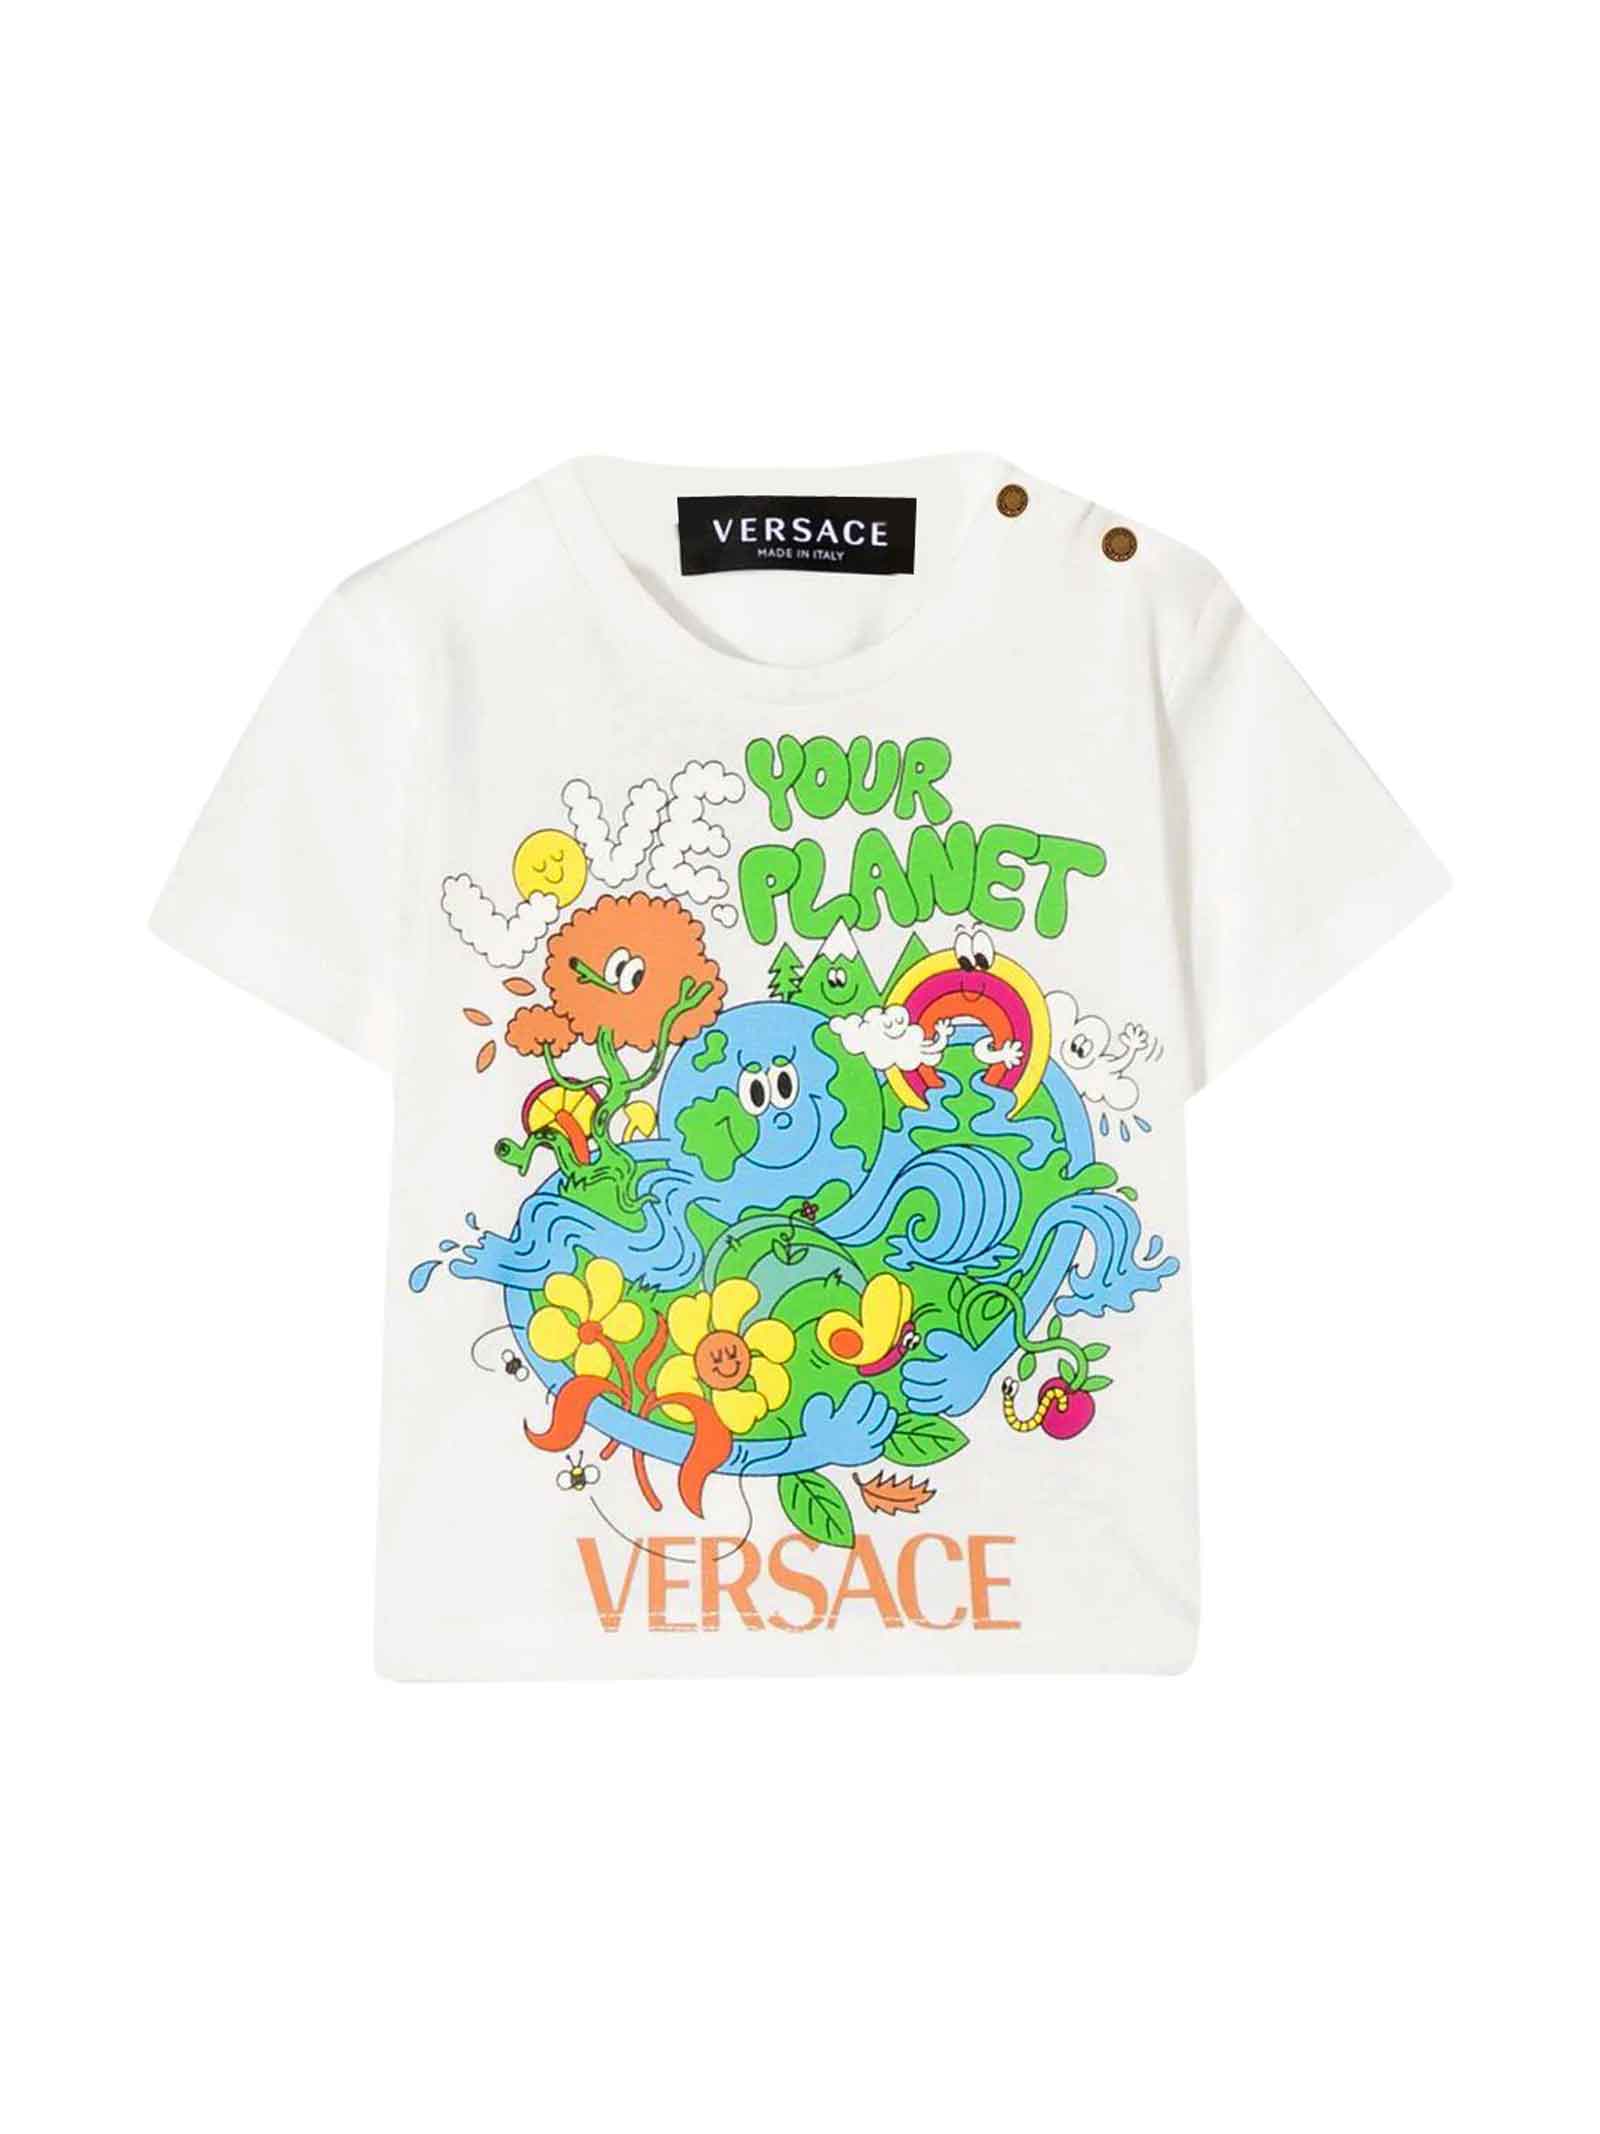 Versace White T-shirt Baby Unisex Kids